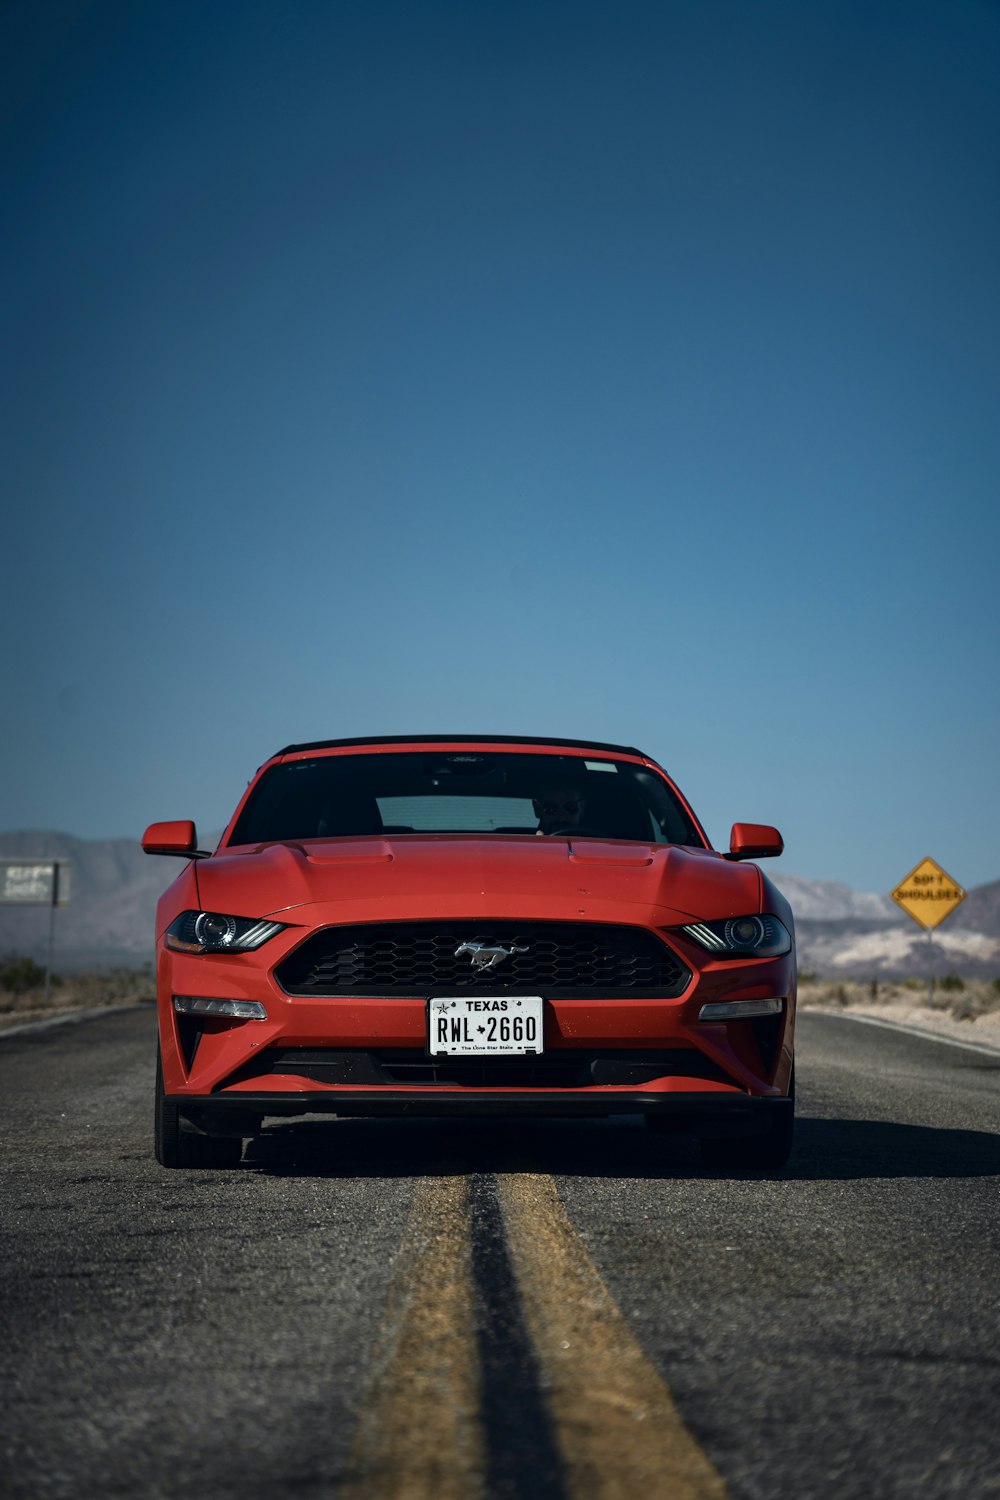 Une Mustang rouge roulant sur la route